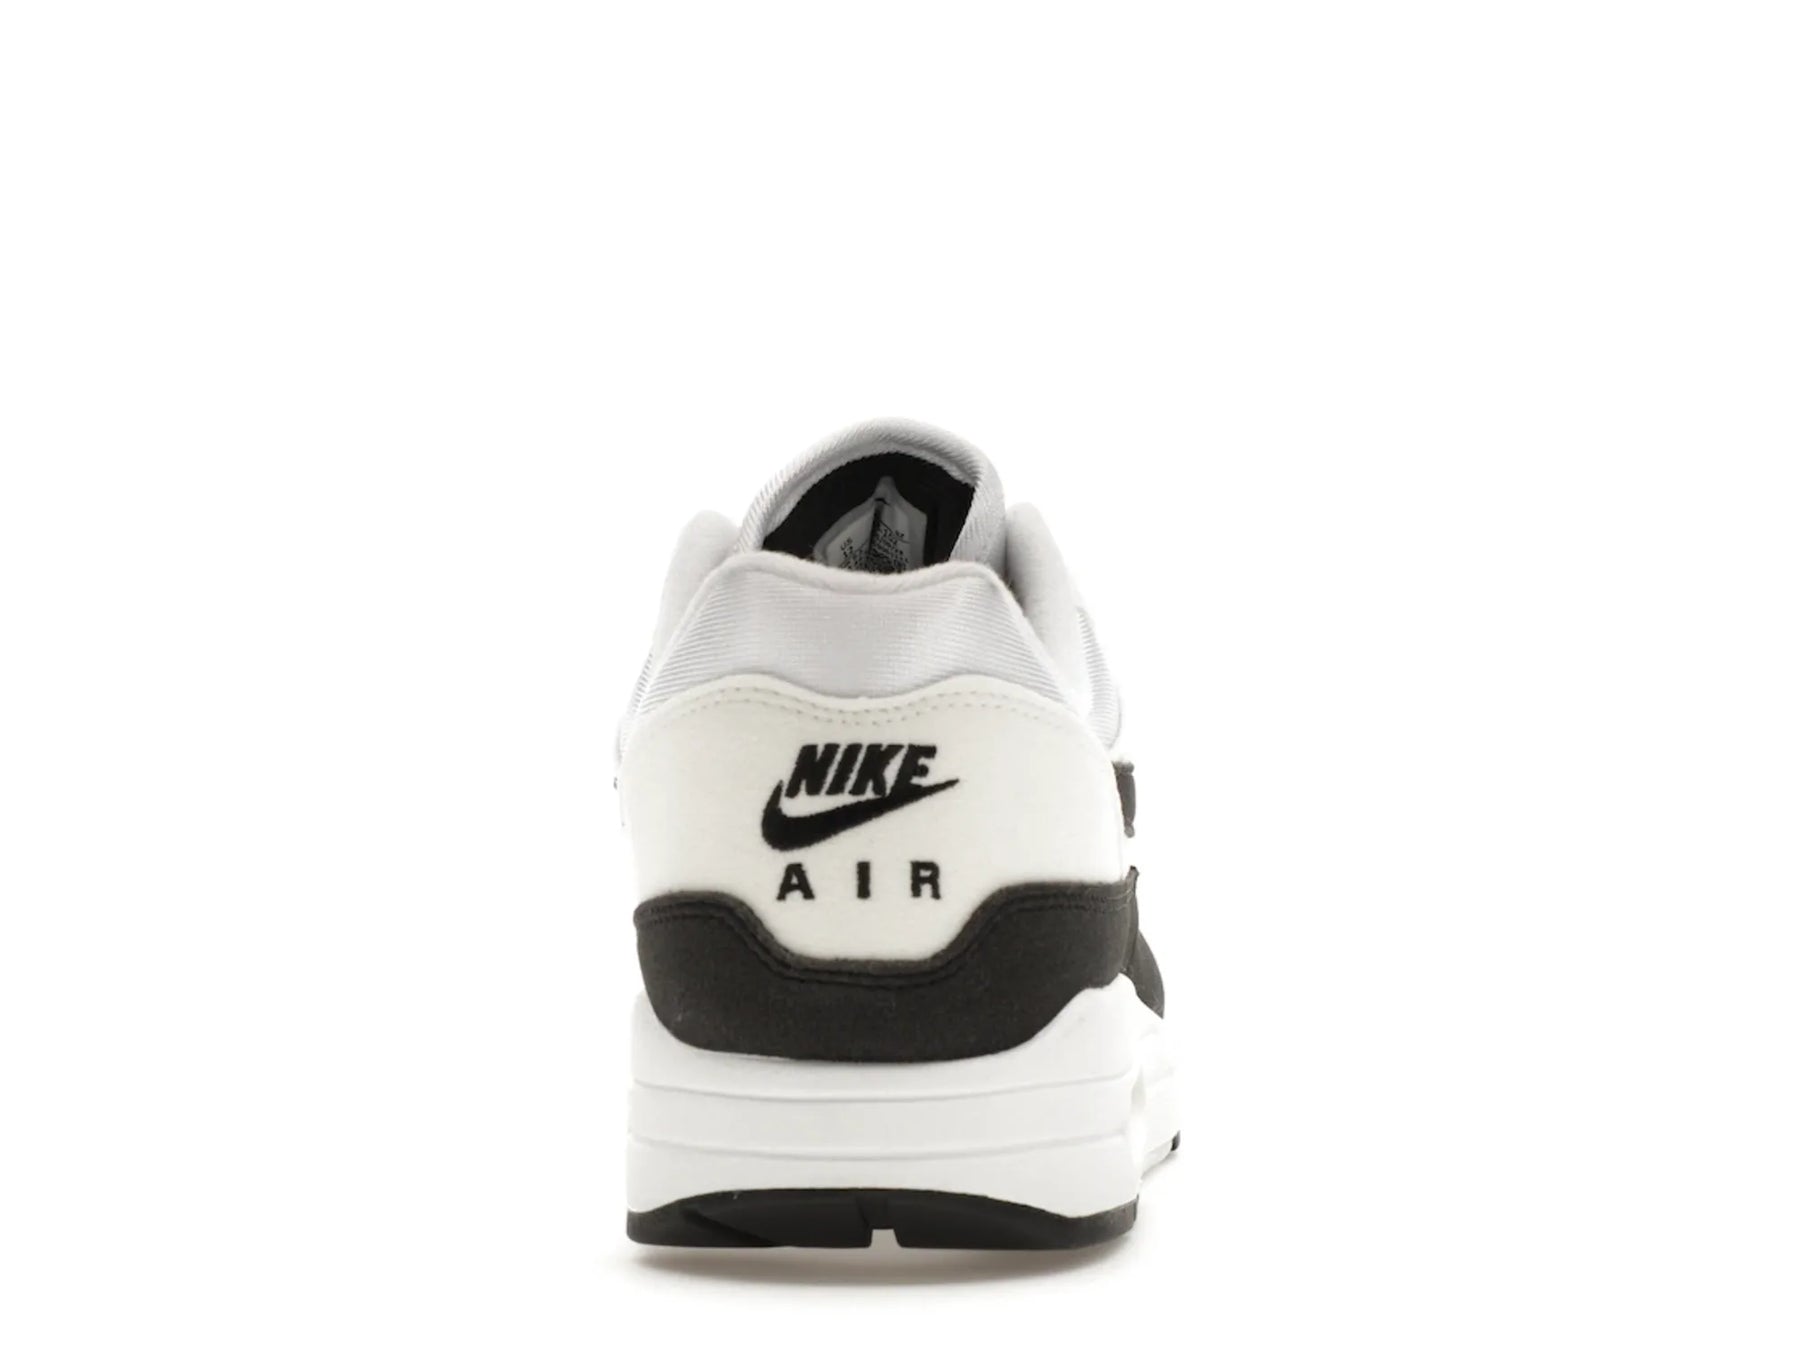 Nike Air Max 1 White Black Neutral Grey (Women's)